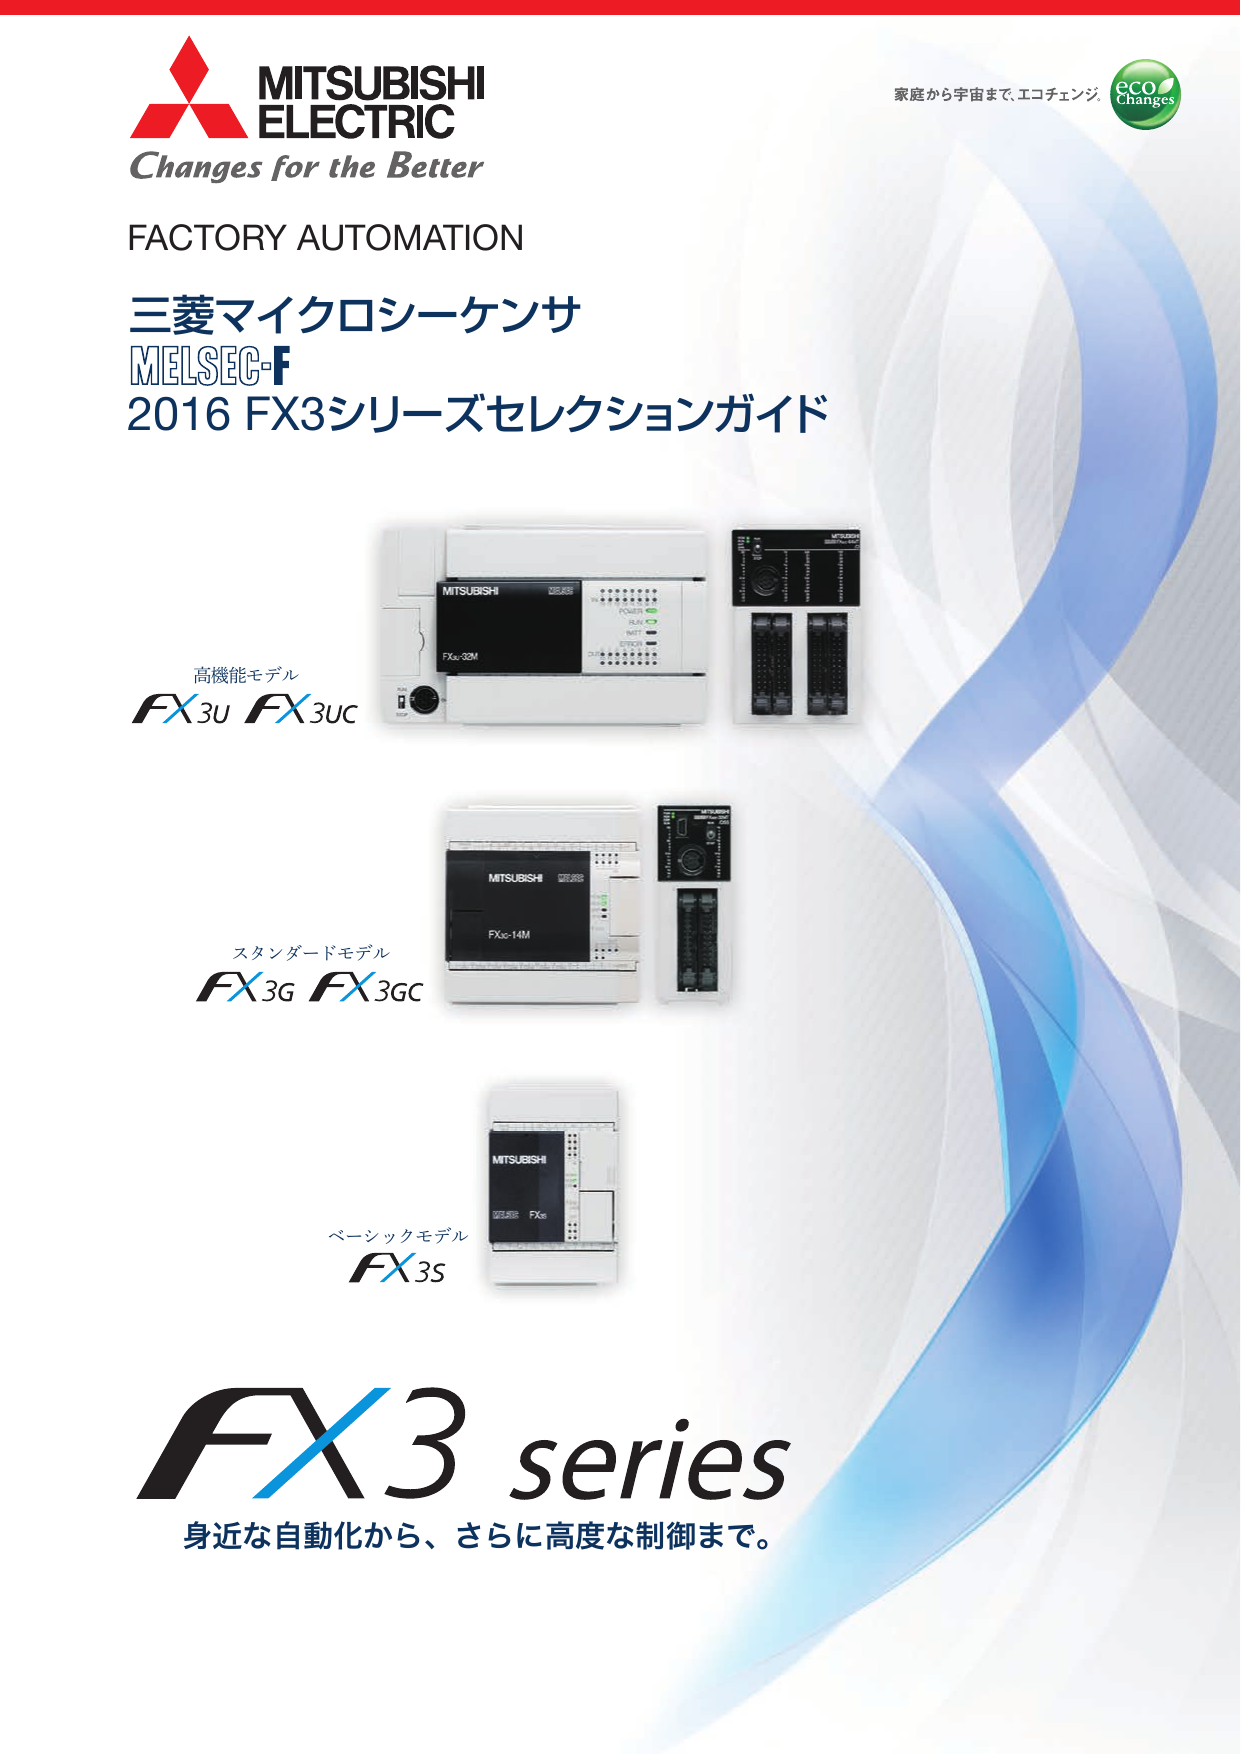 新規購入 tribe store三菱電機 汎用シーケンサ MELSEC-F FX3Uシリーズ FX3U-2HC